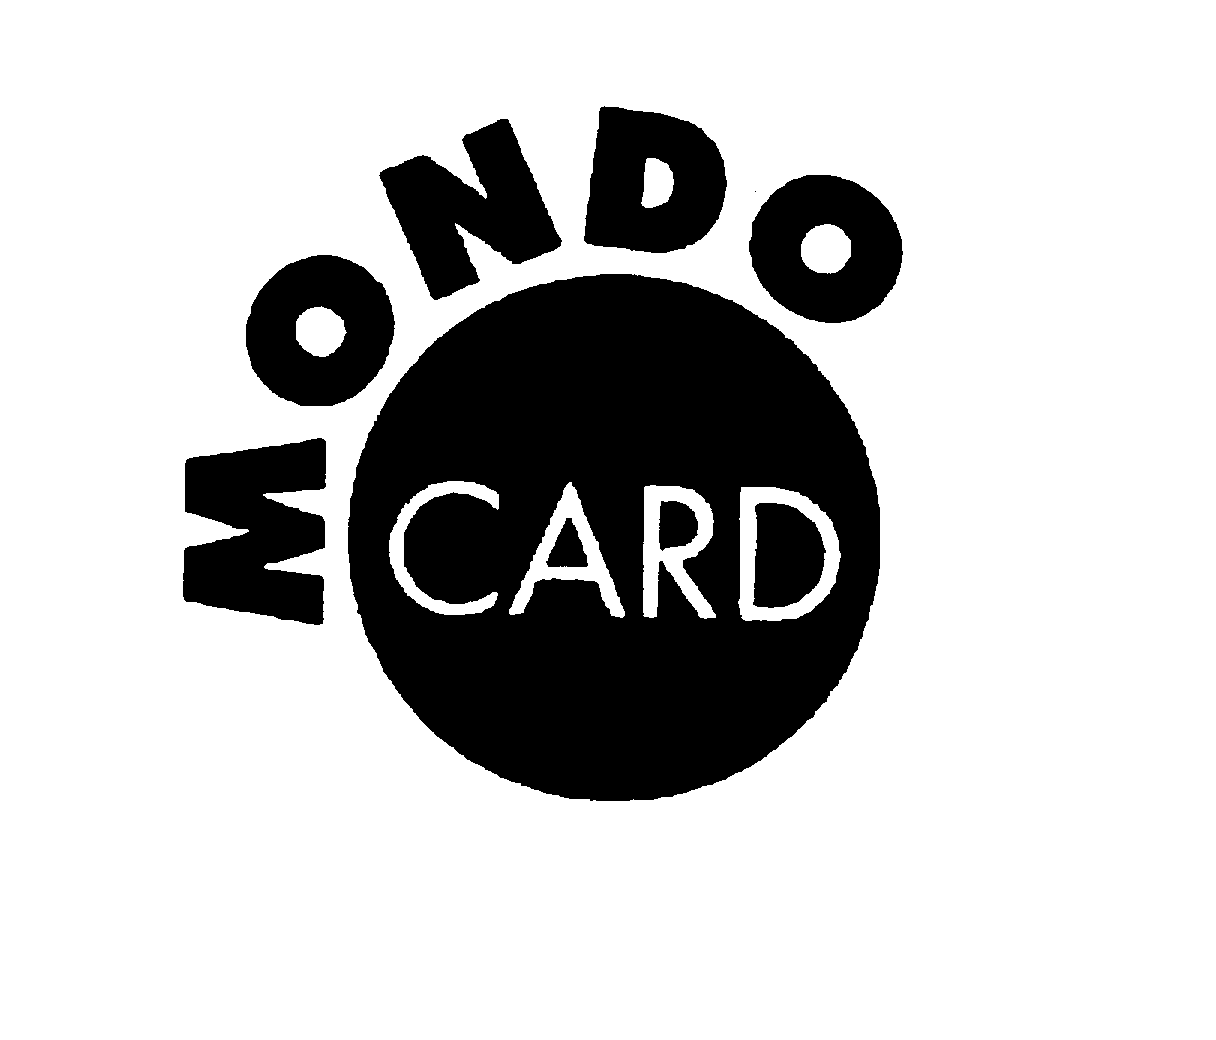  MONDO CARD